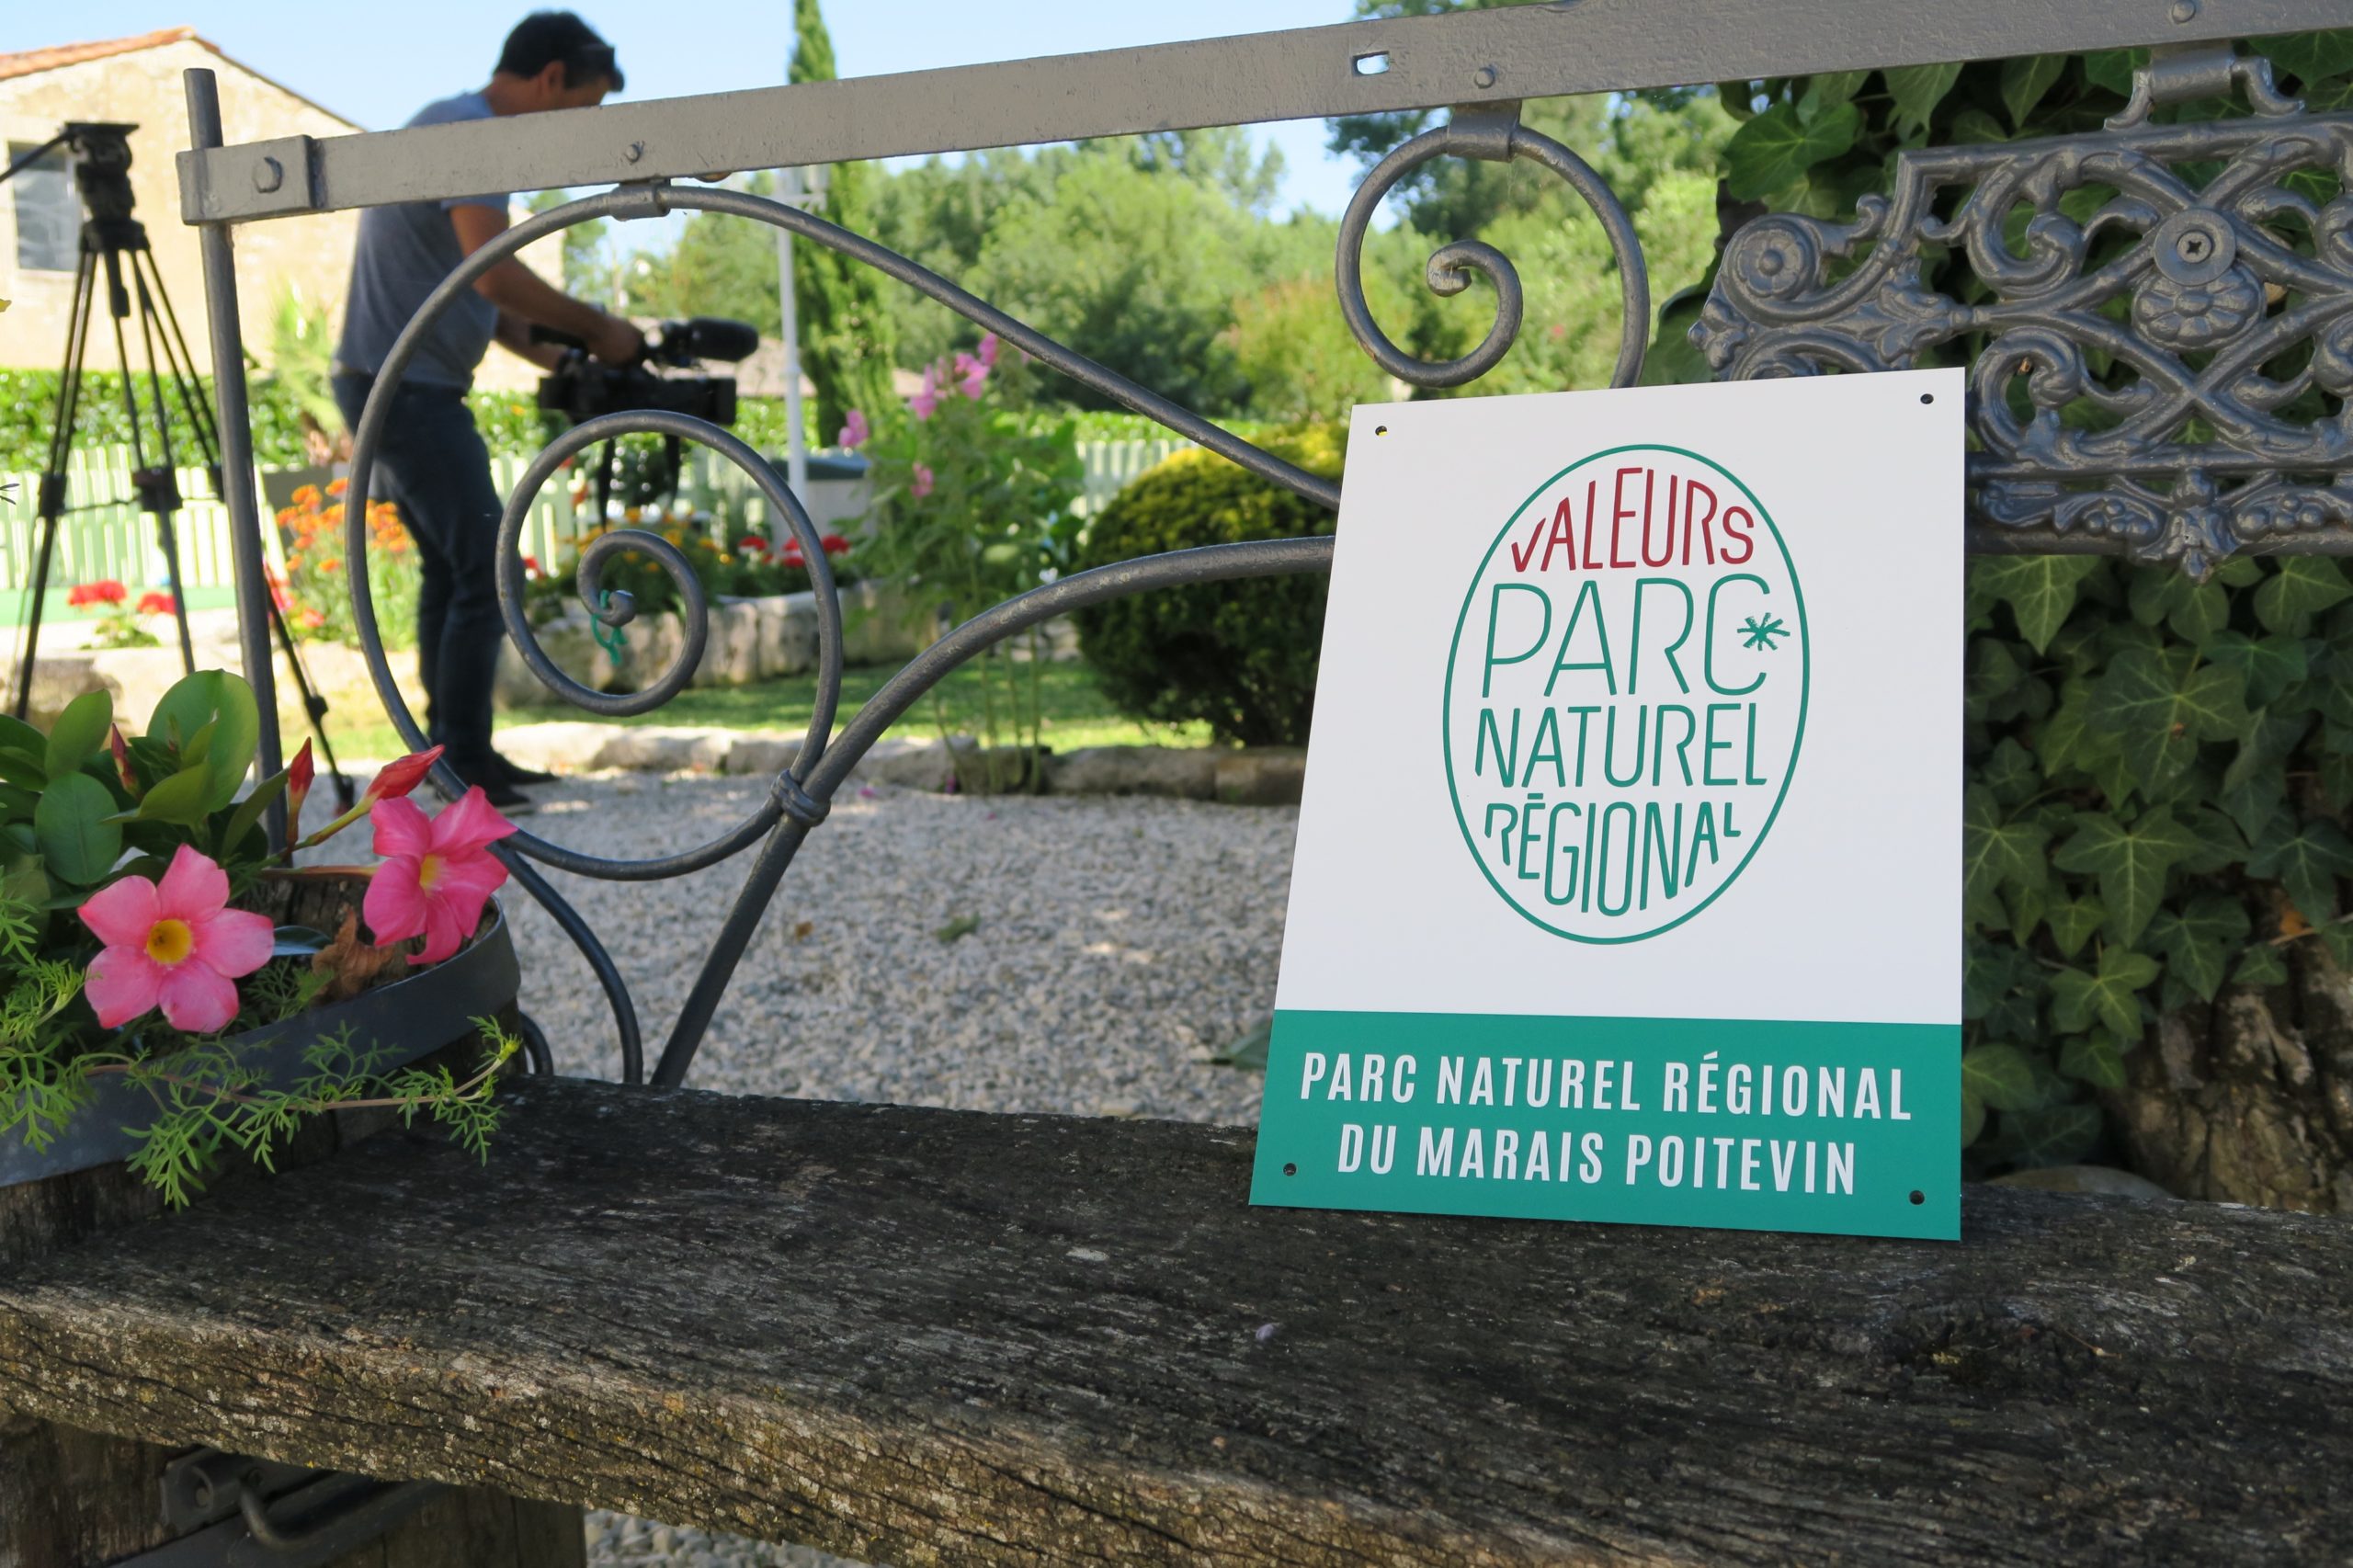 Marque "Valeurs Parc naturel régional" chez un hebergeur du Marais poitevin